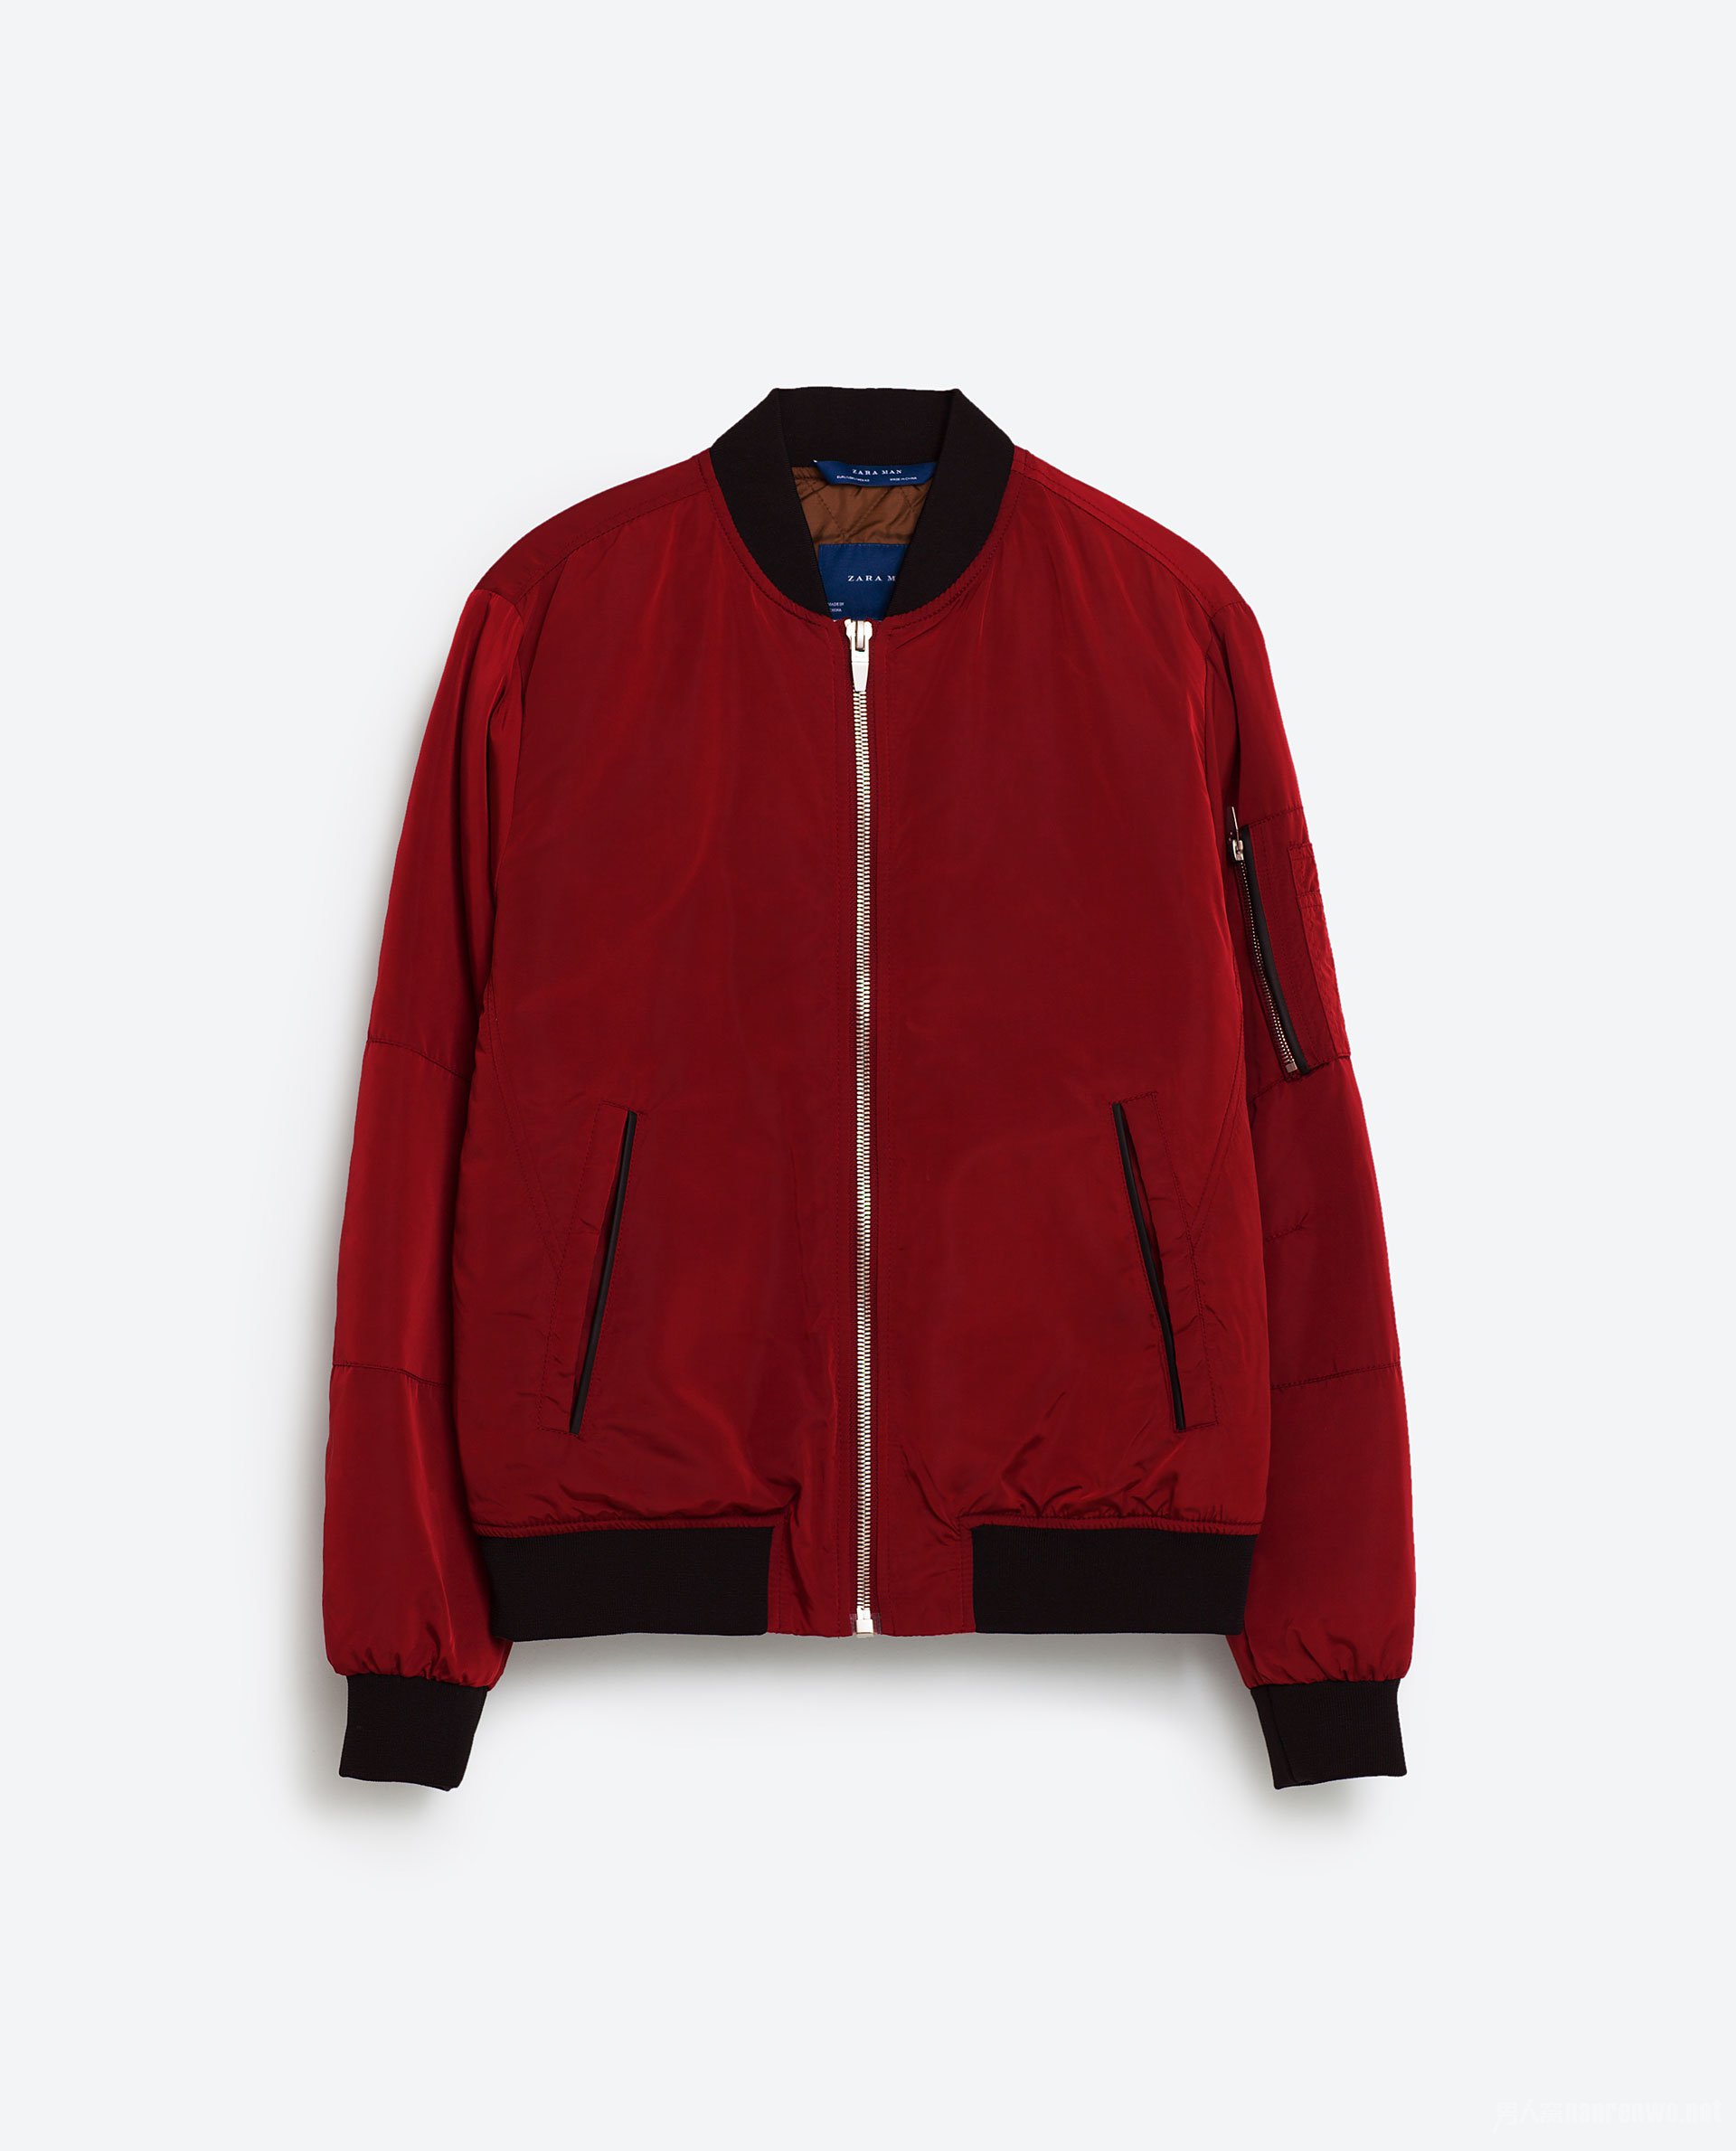 ZARA 红色bomber jacket